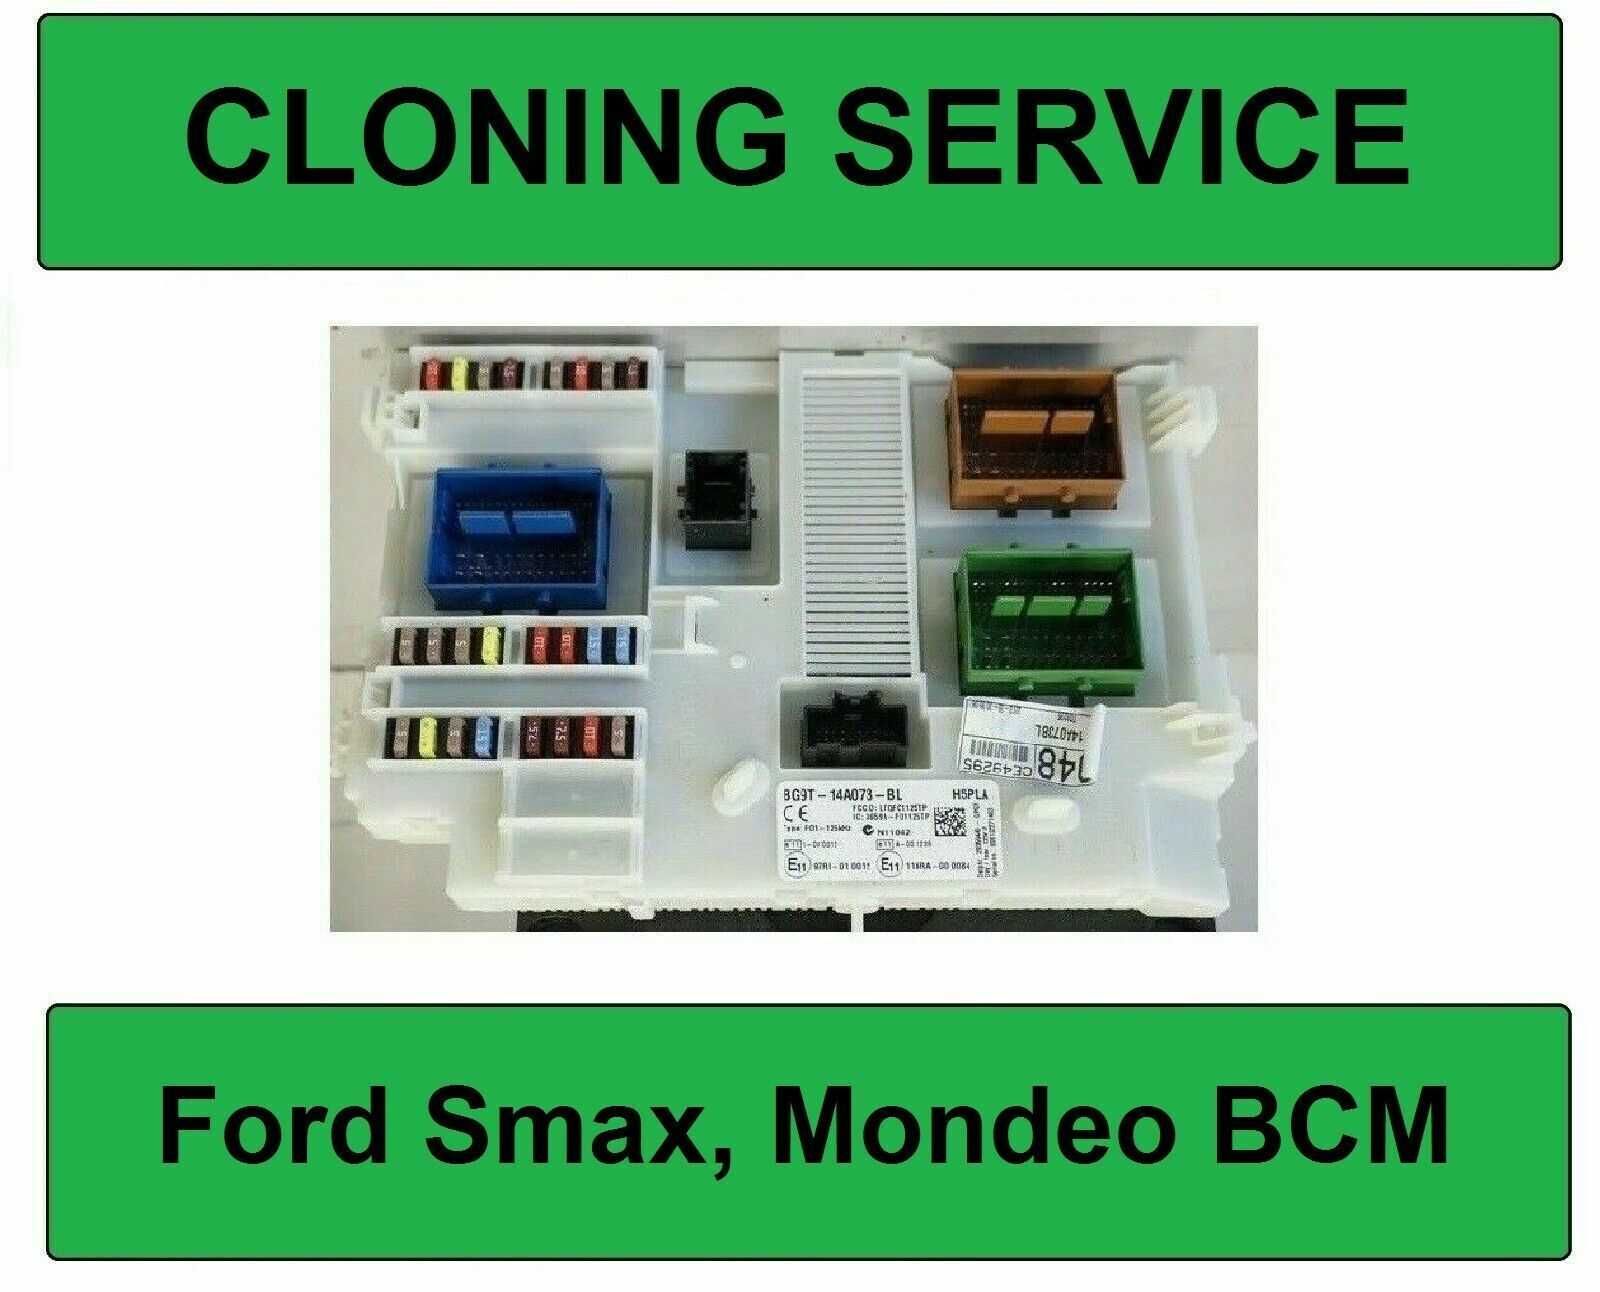 Reparatii sau Clonare Module Confort BCM, BSI, CEM, SAM, CAS3, FRM3